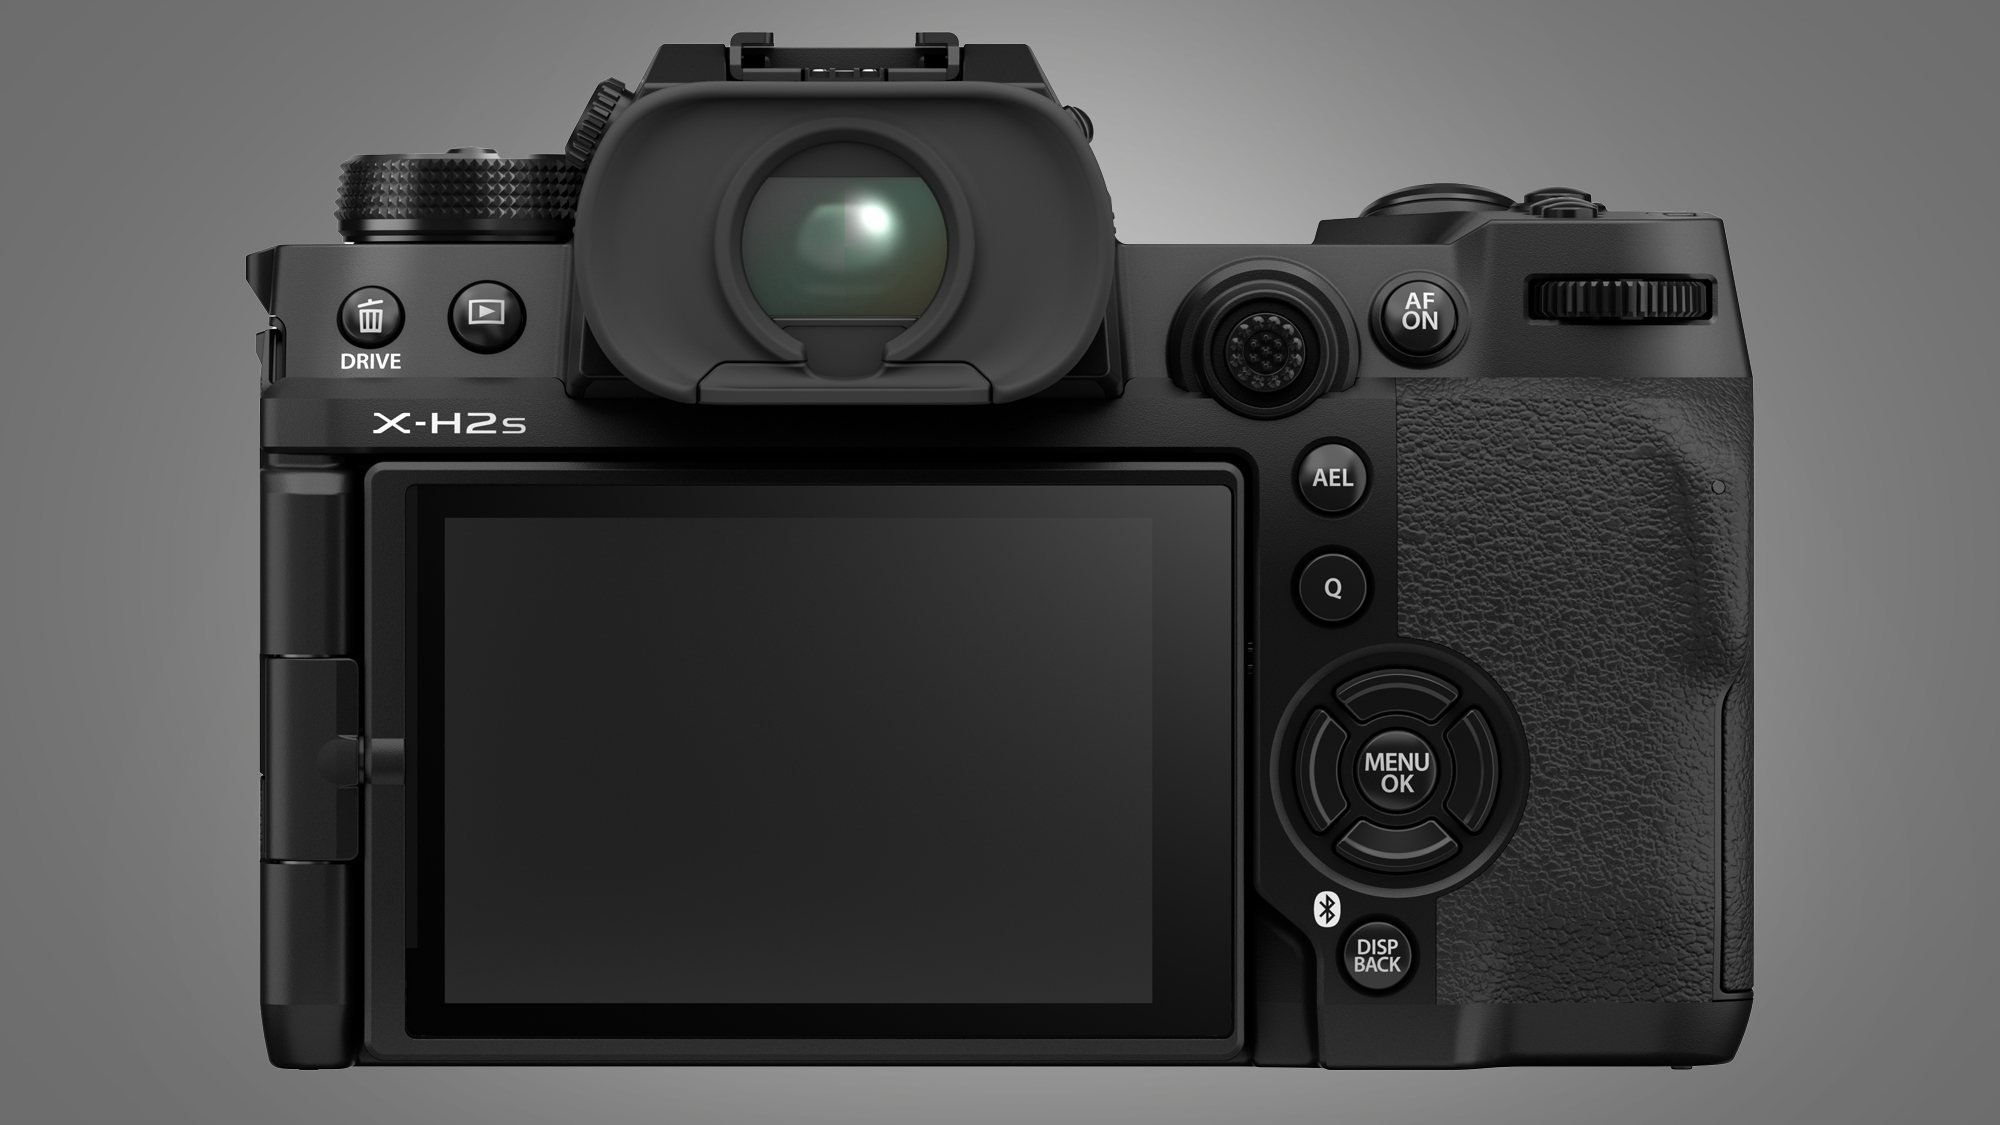 Fujifilm Камера X-H2S на сером фоне